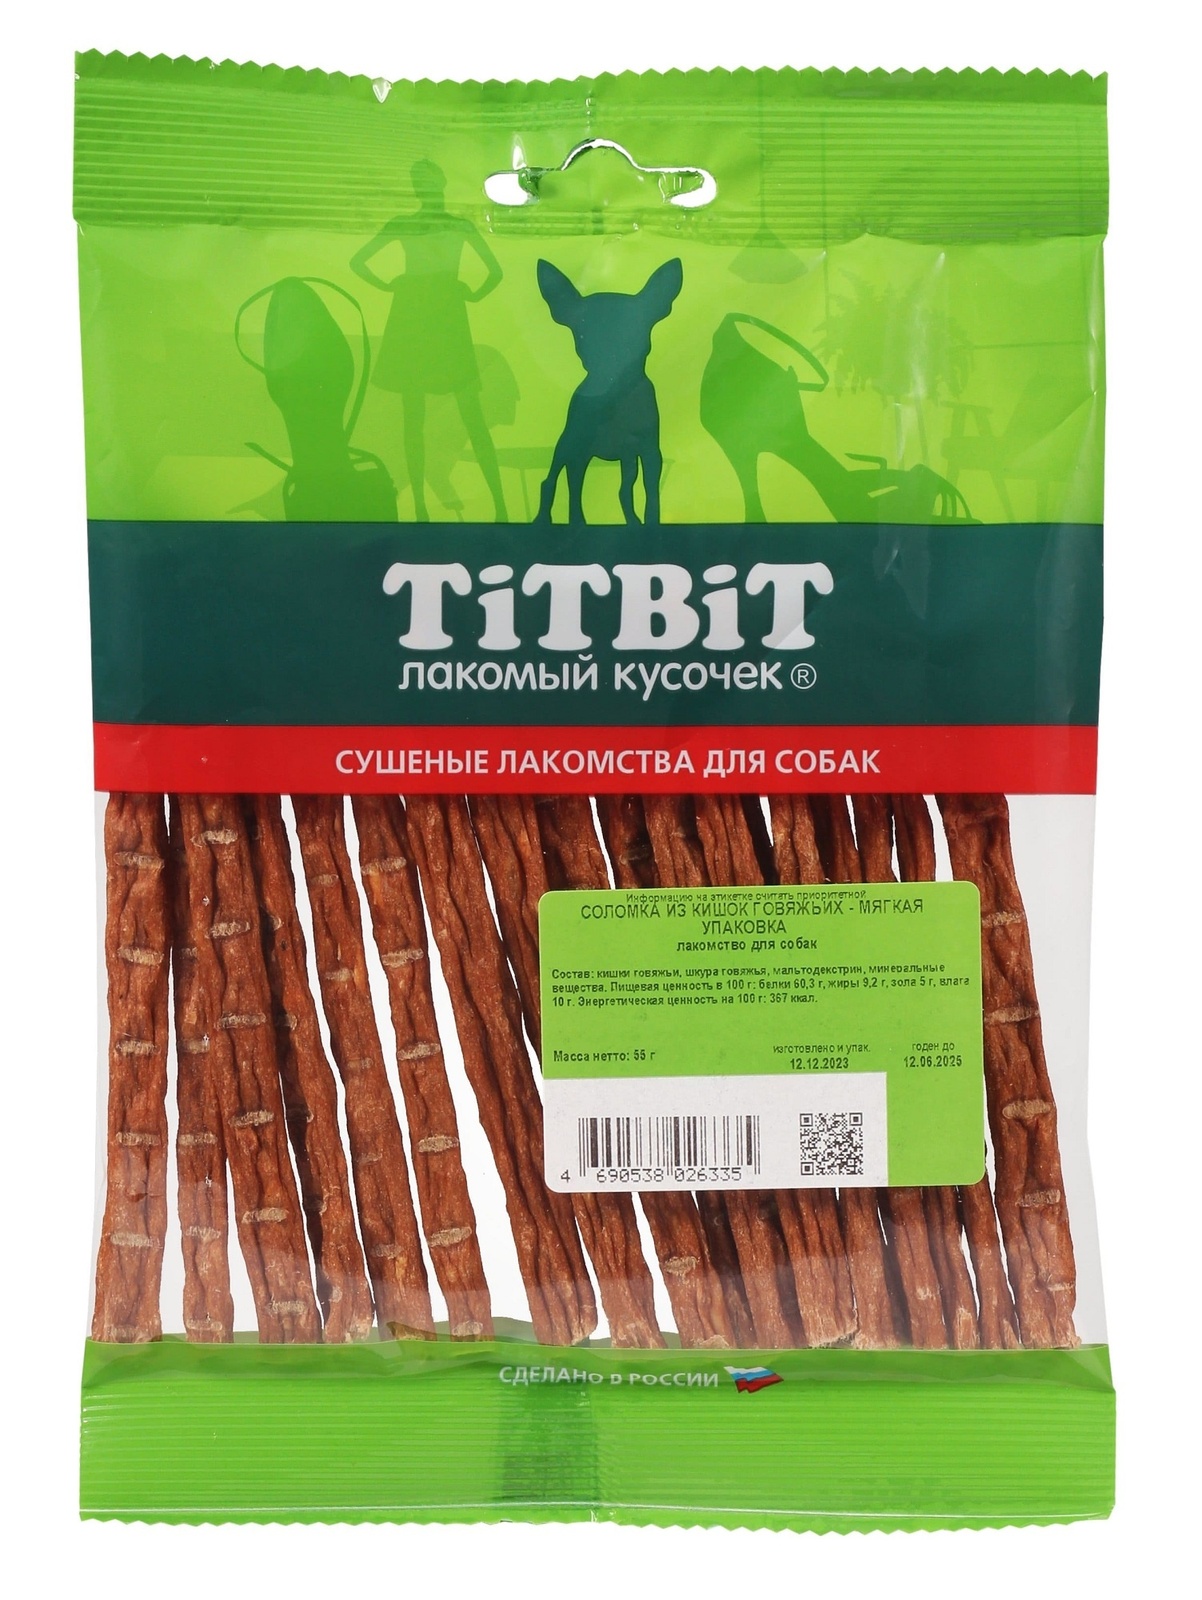 TiTBiT TiTBiT соломка из кишок говяжьих - мягкая упаковка (50 г) titbit корень бычий резаный мягкая упаковка 50 г